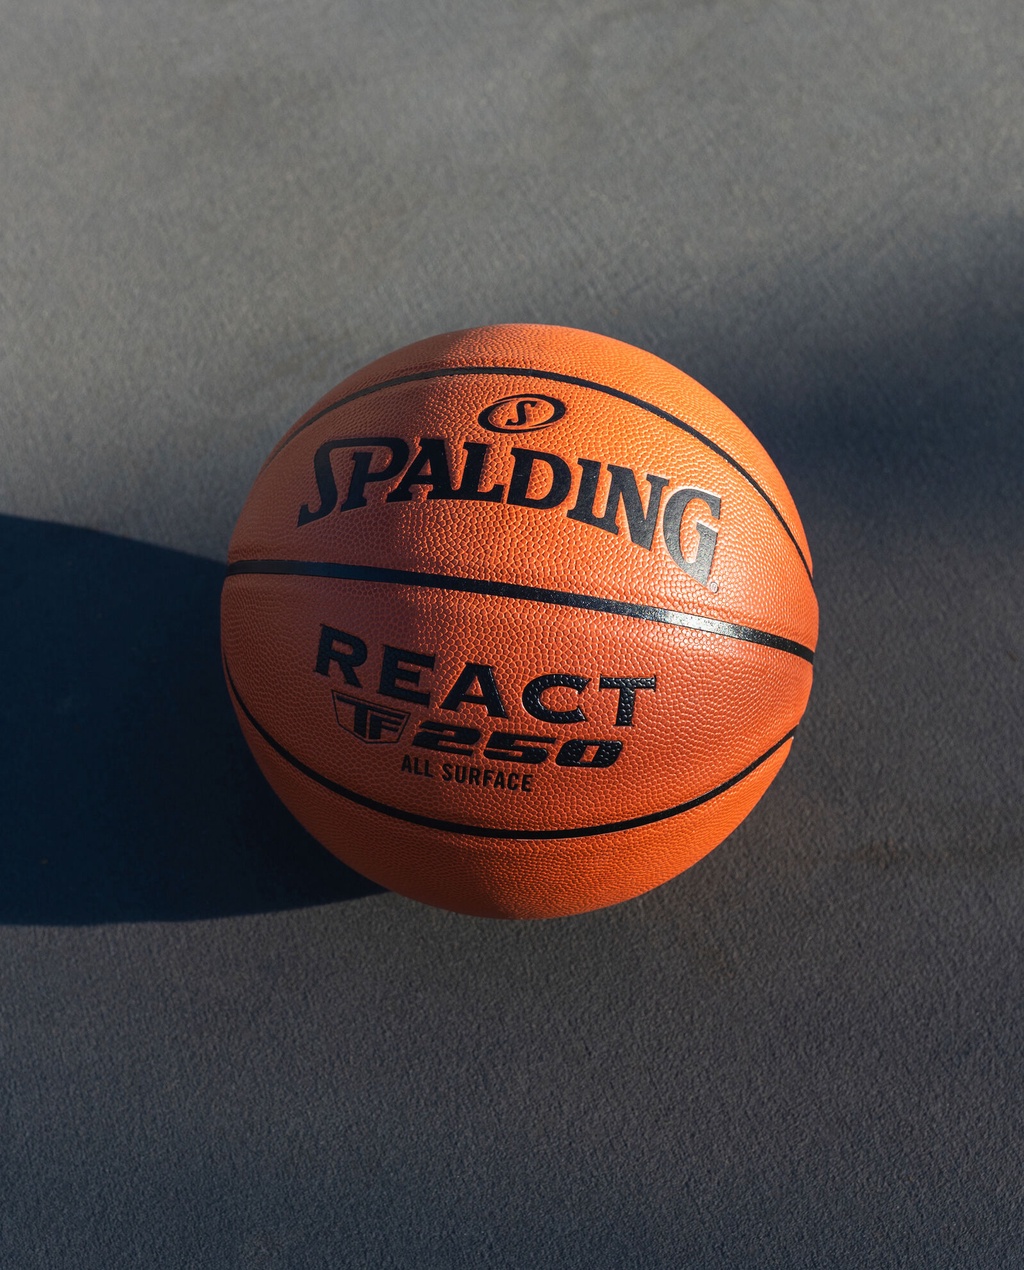 รูปภาพเพิ่มเติมเกี่ยวกับ Spalding ลูกบาสเกตบอล REACT TF-250 / GOLD / SILVER สำหรับเล่นทุกพื้นสนาม